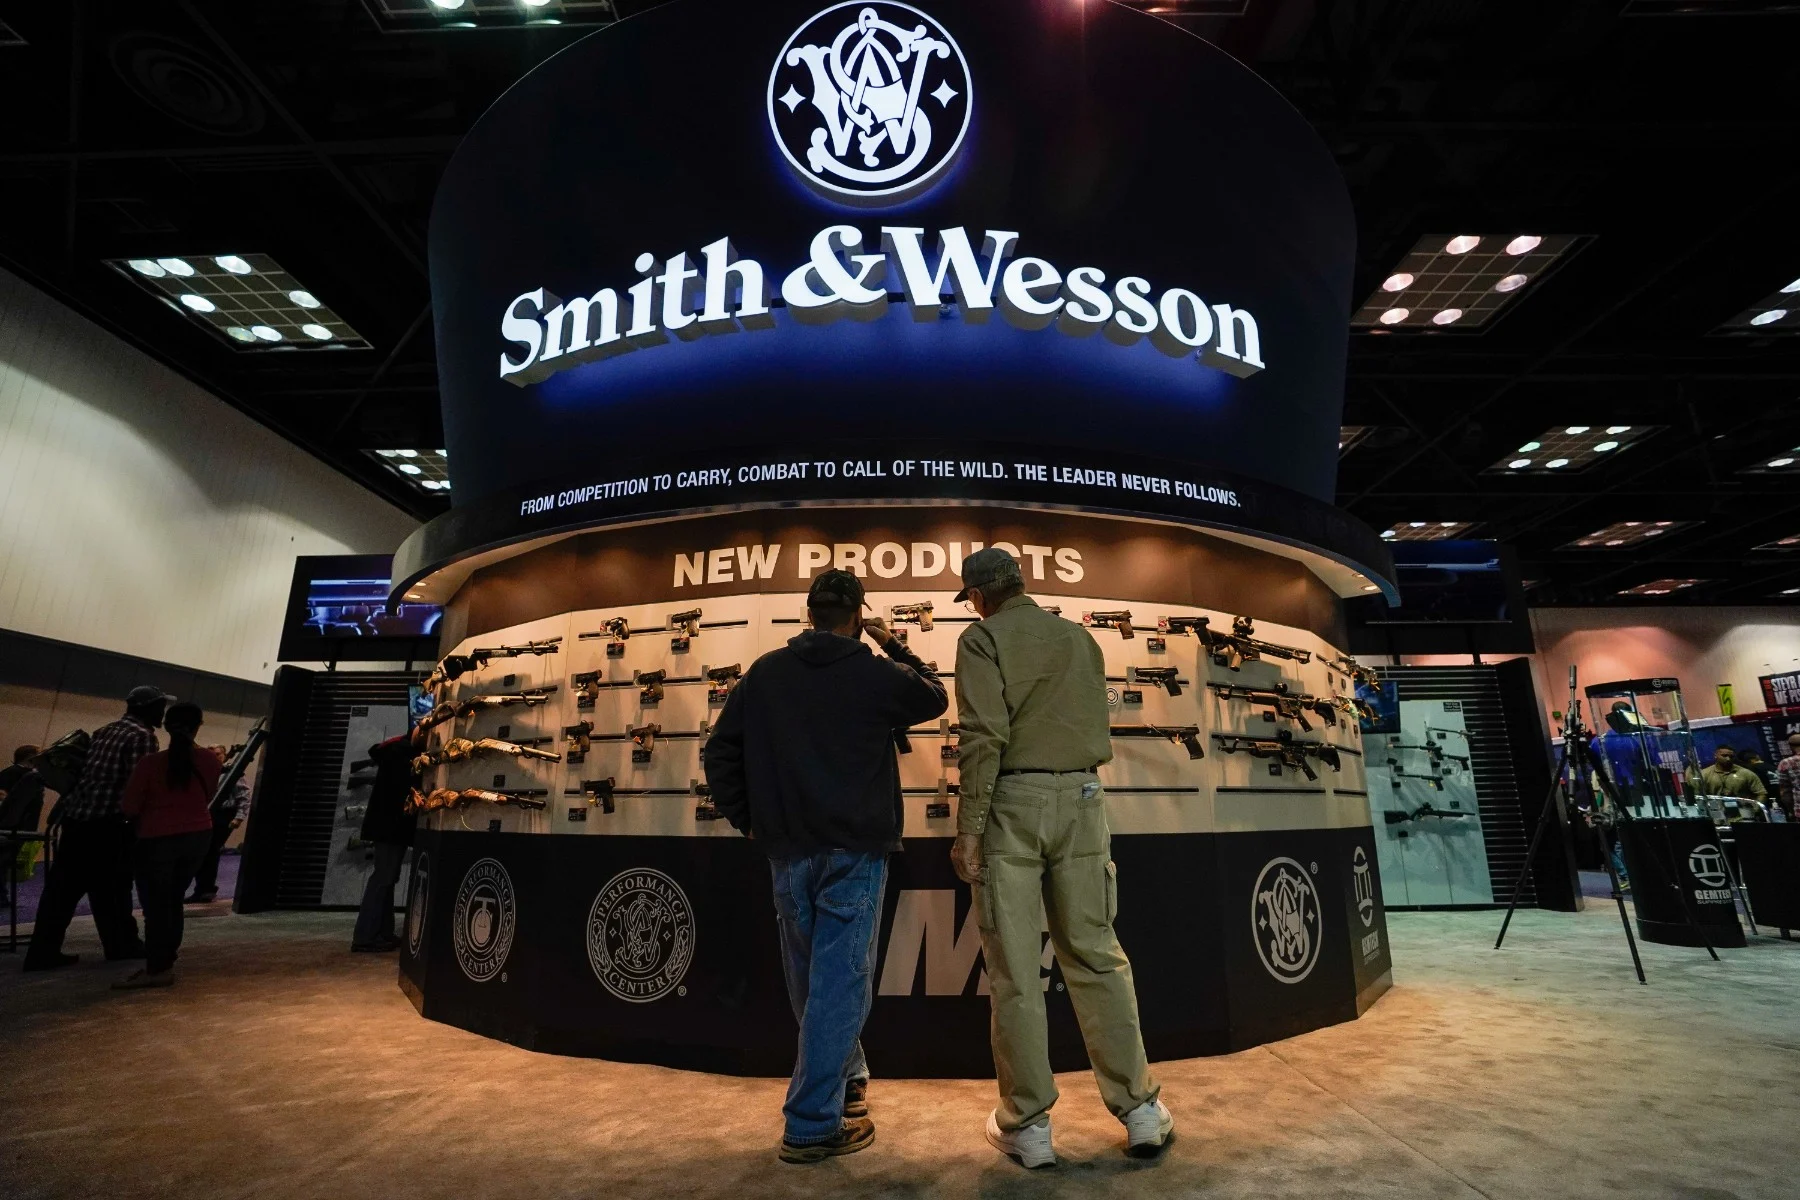 Smith & Wesson, posiblemente de las marcas de armas cortas mas famosas del mundo.